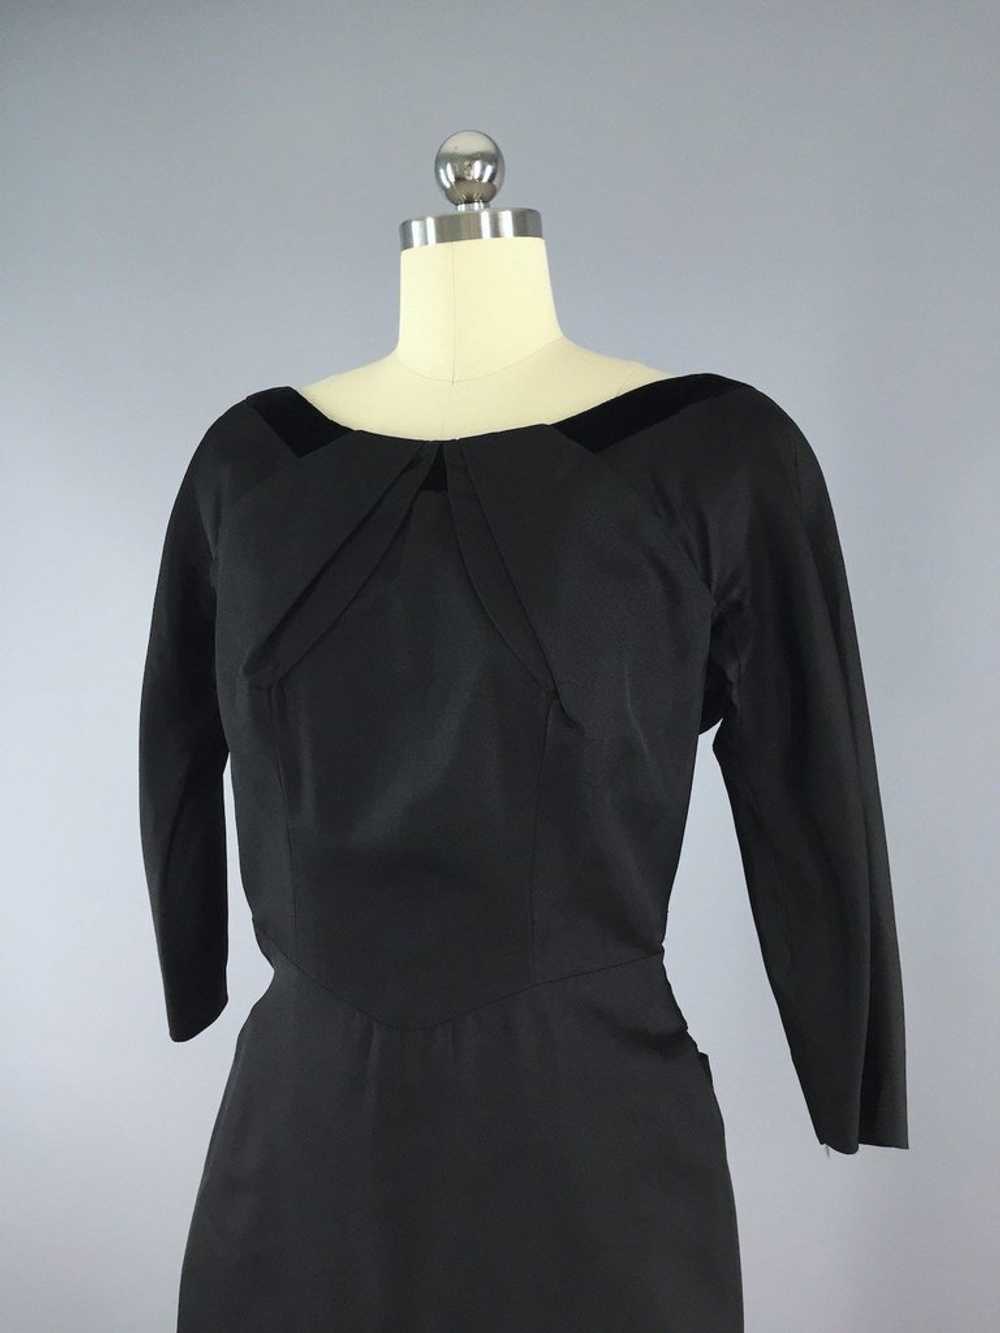 Vintage 1950s Black Taffeta New Look Dress - image 2